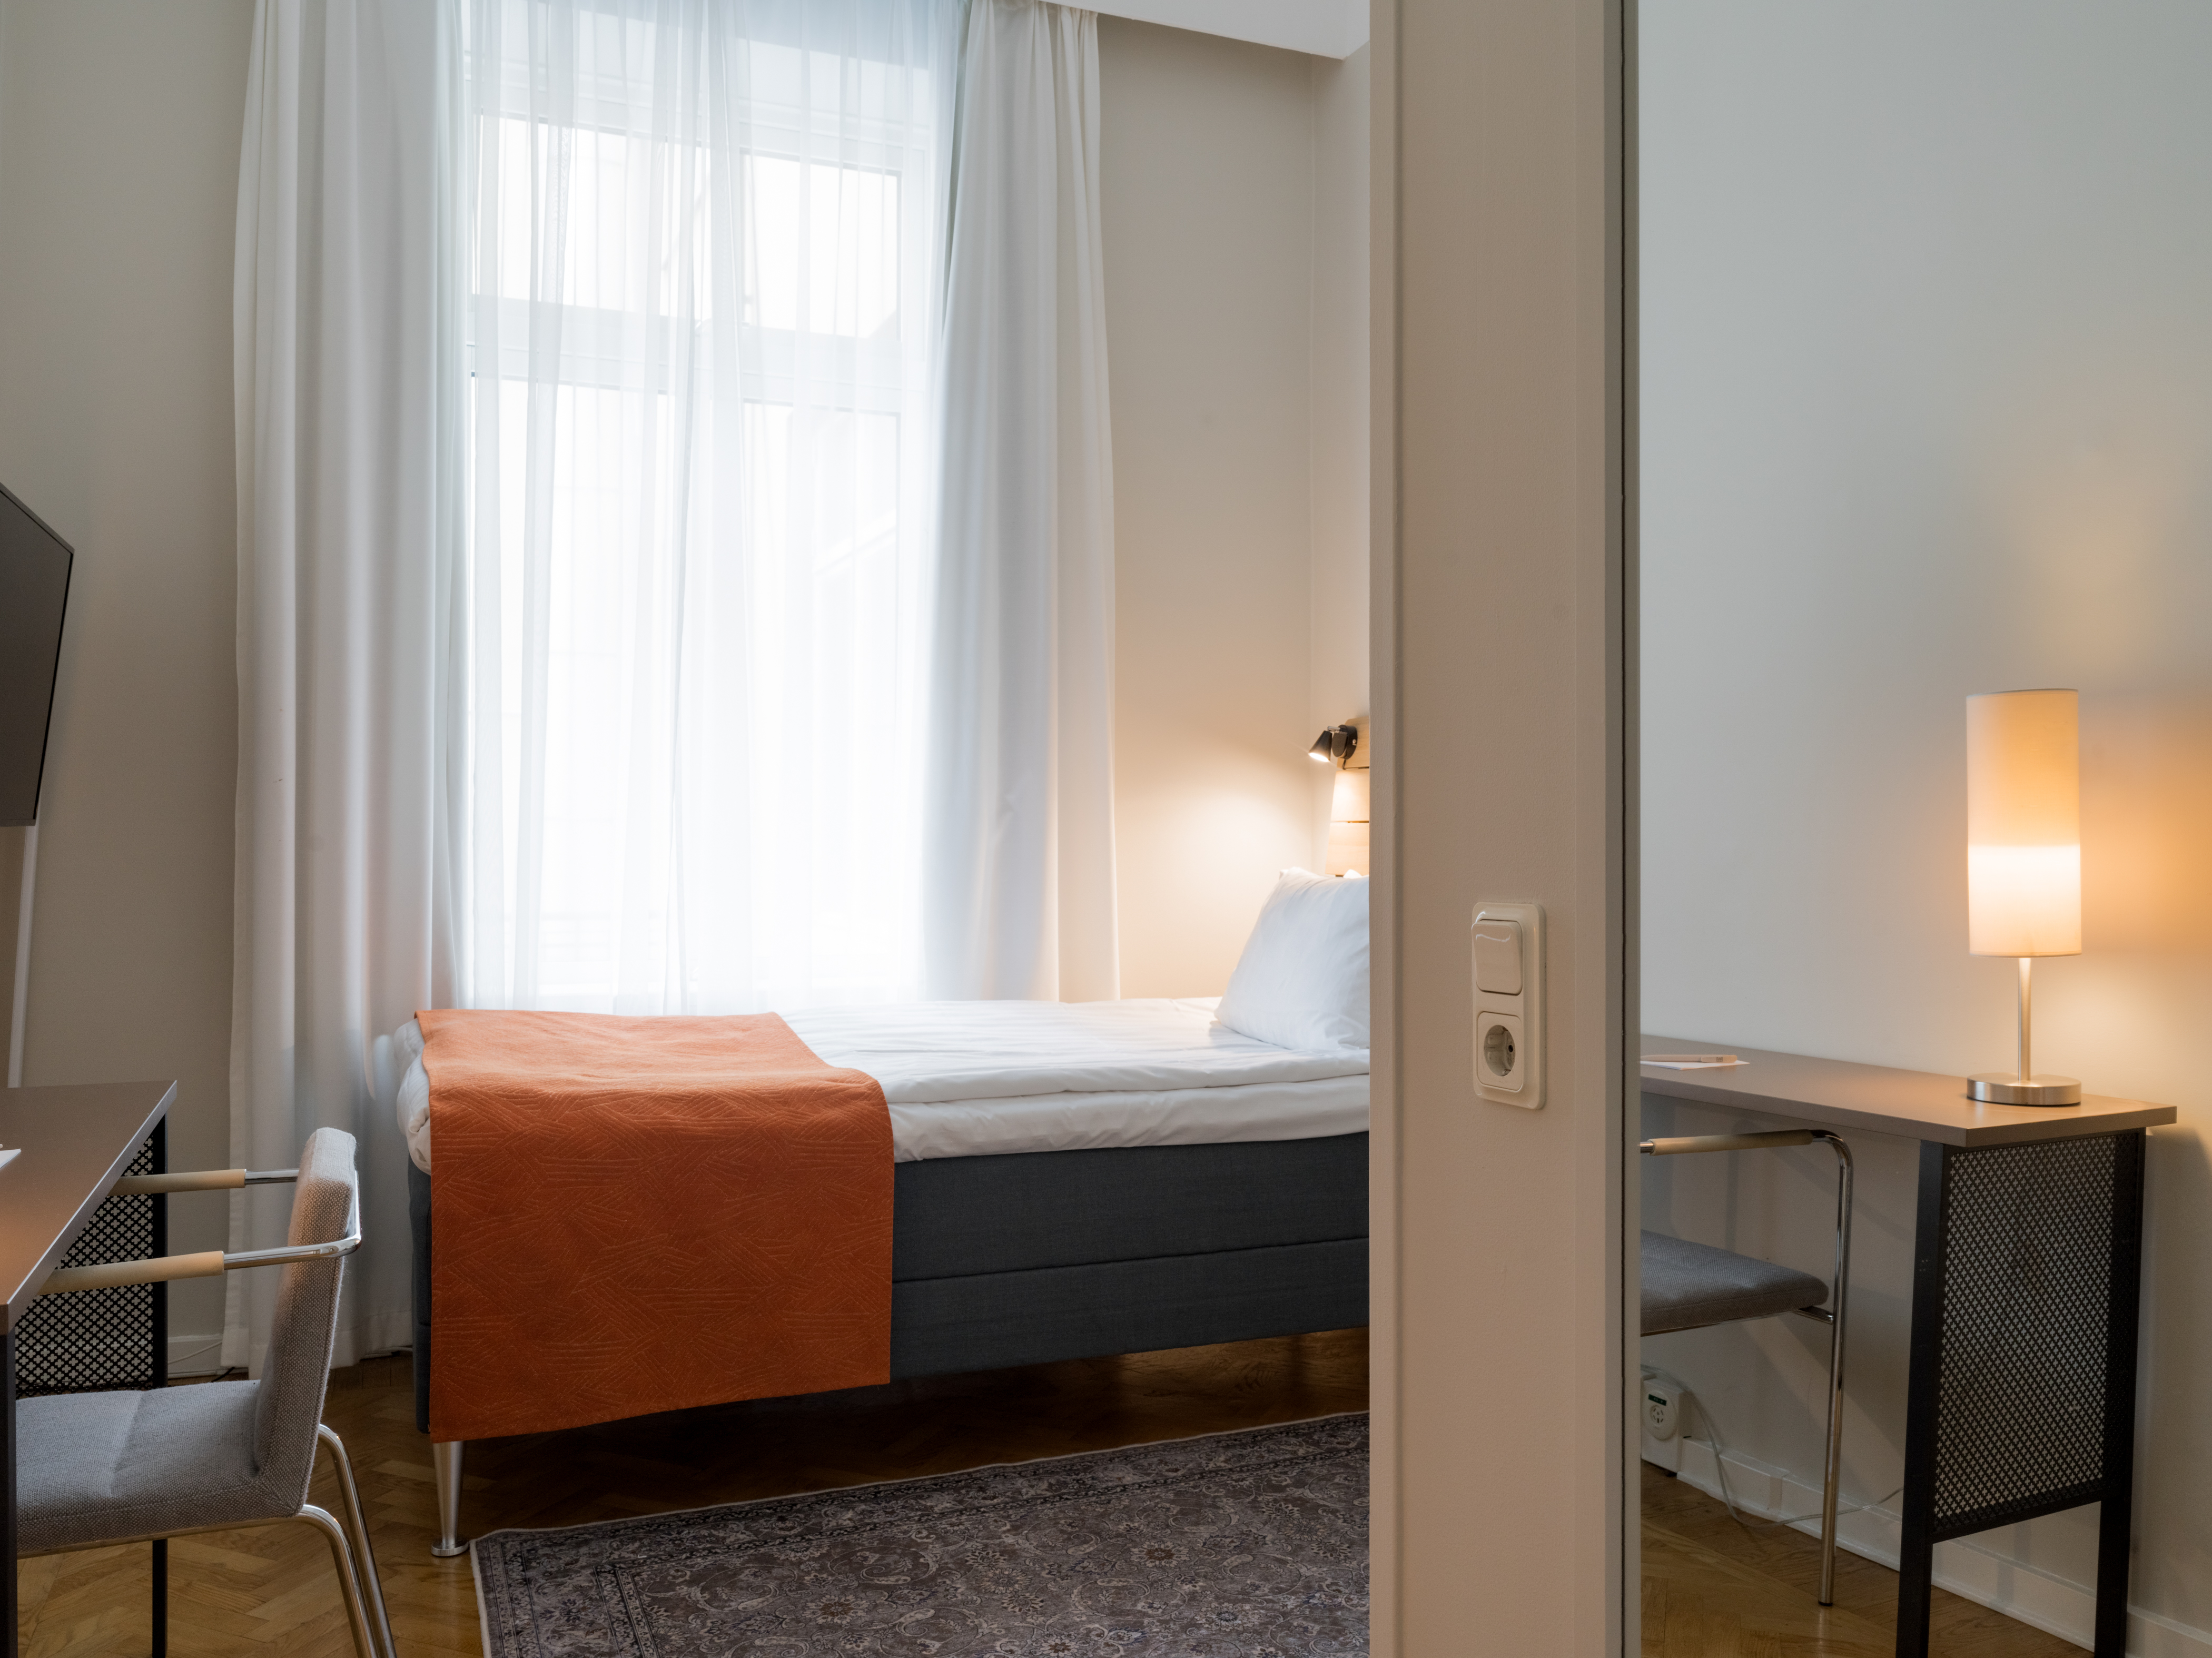 Mysigt hotellrum med enkelsäng, skrivbord och fönster